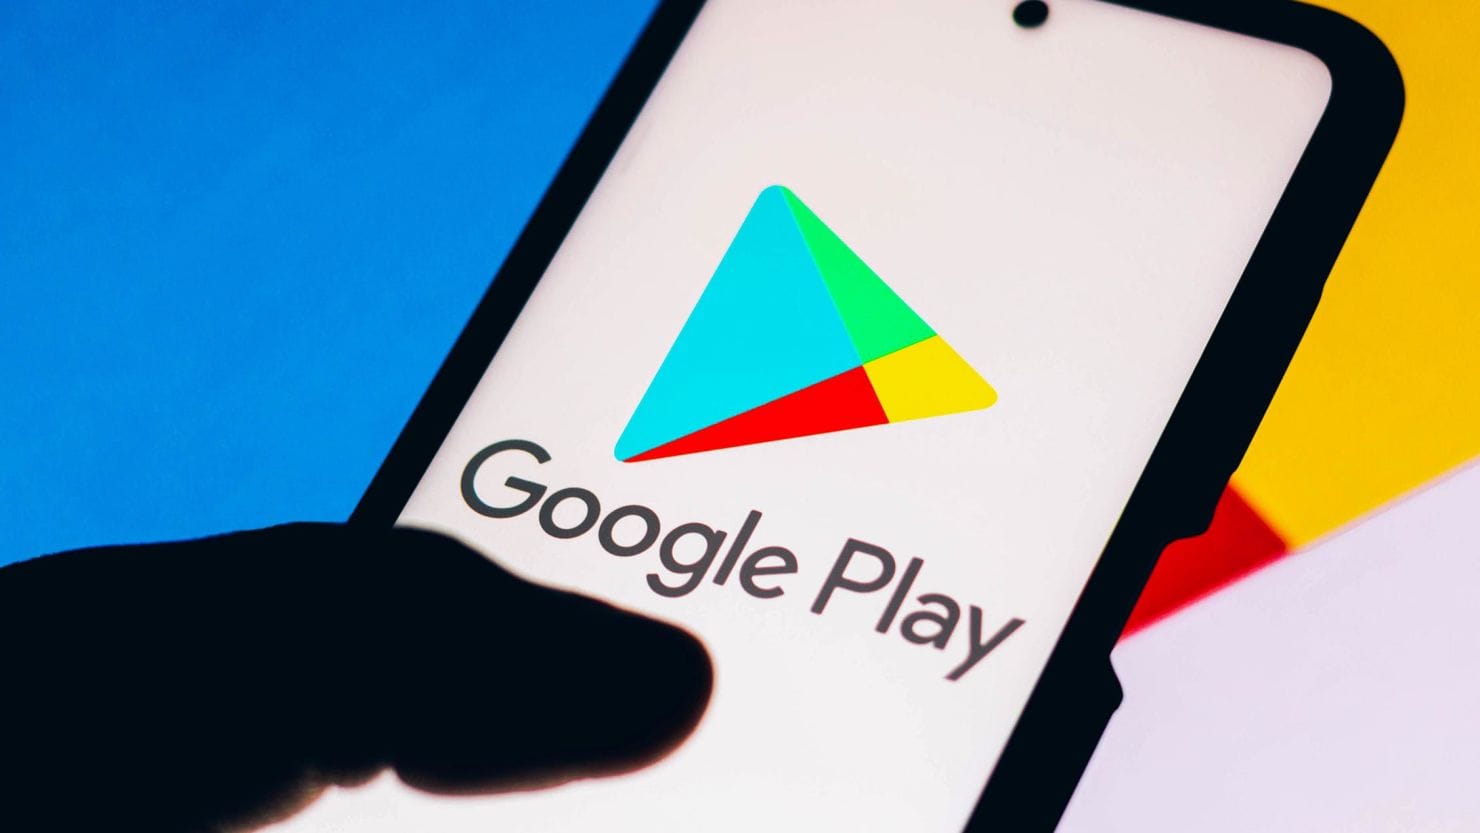 Google может удалить купленные приложения с ваших устройств Android